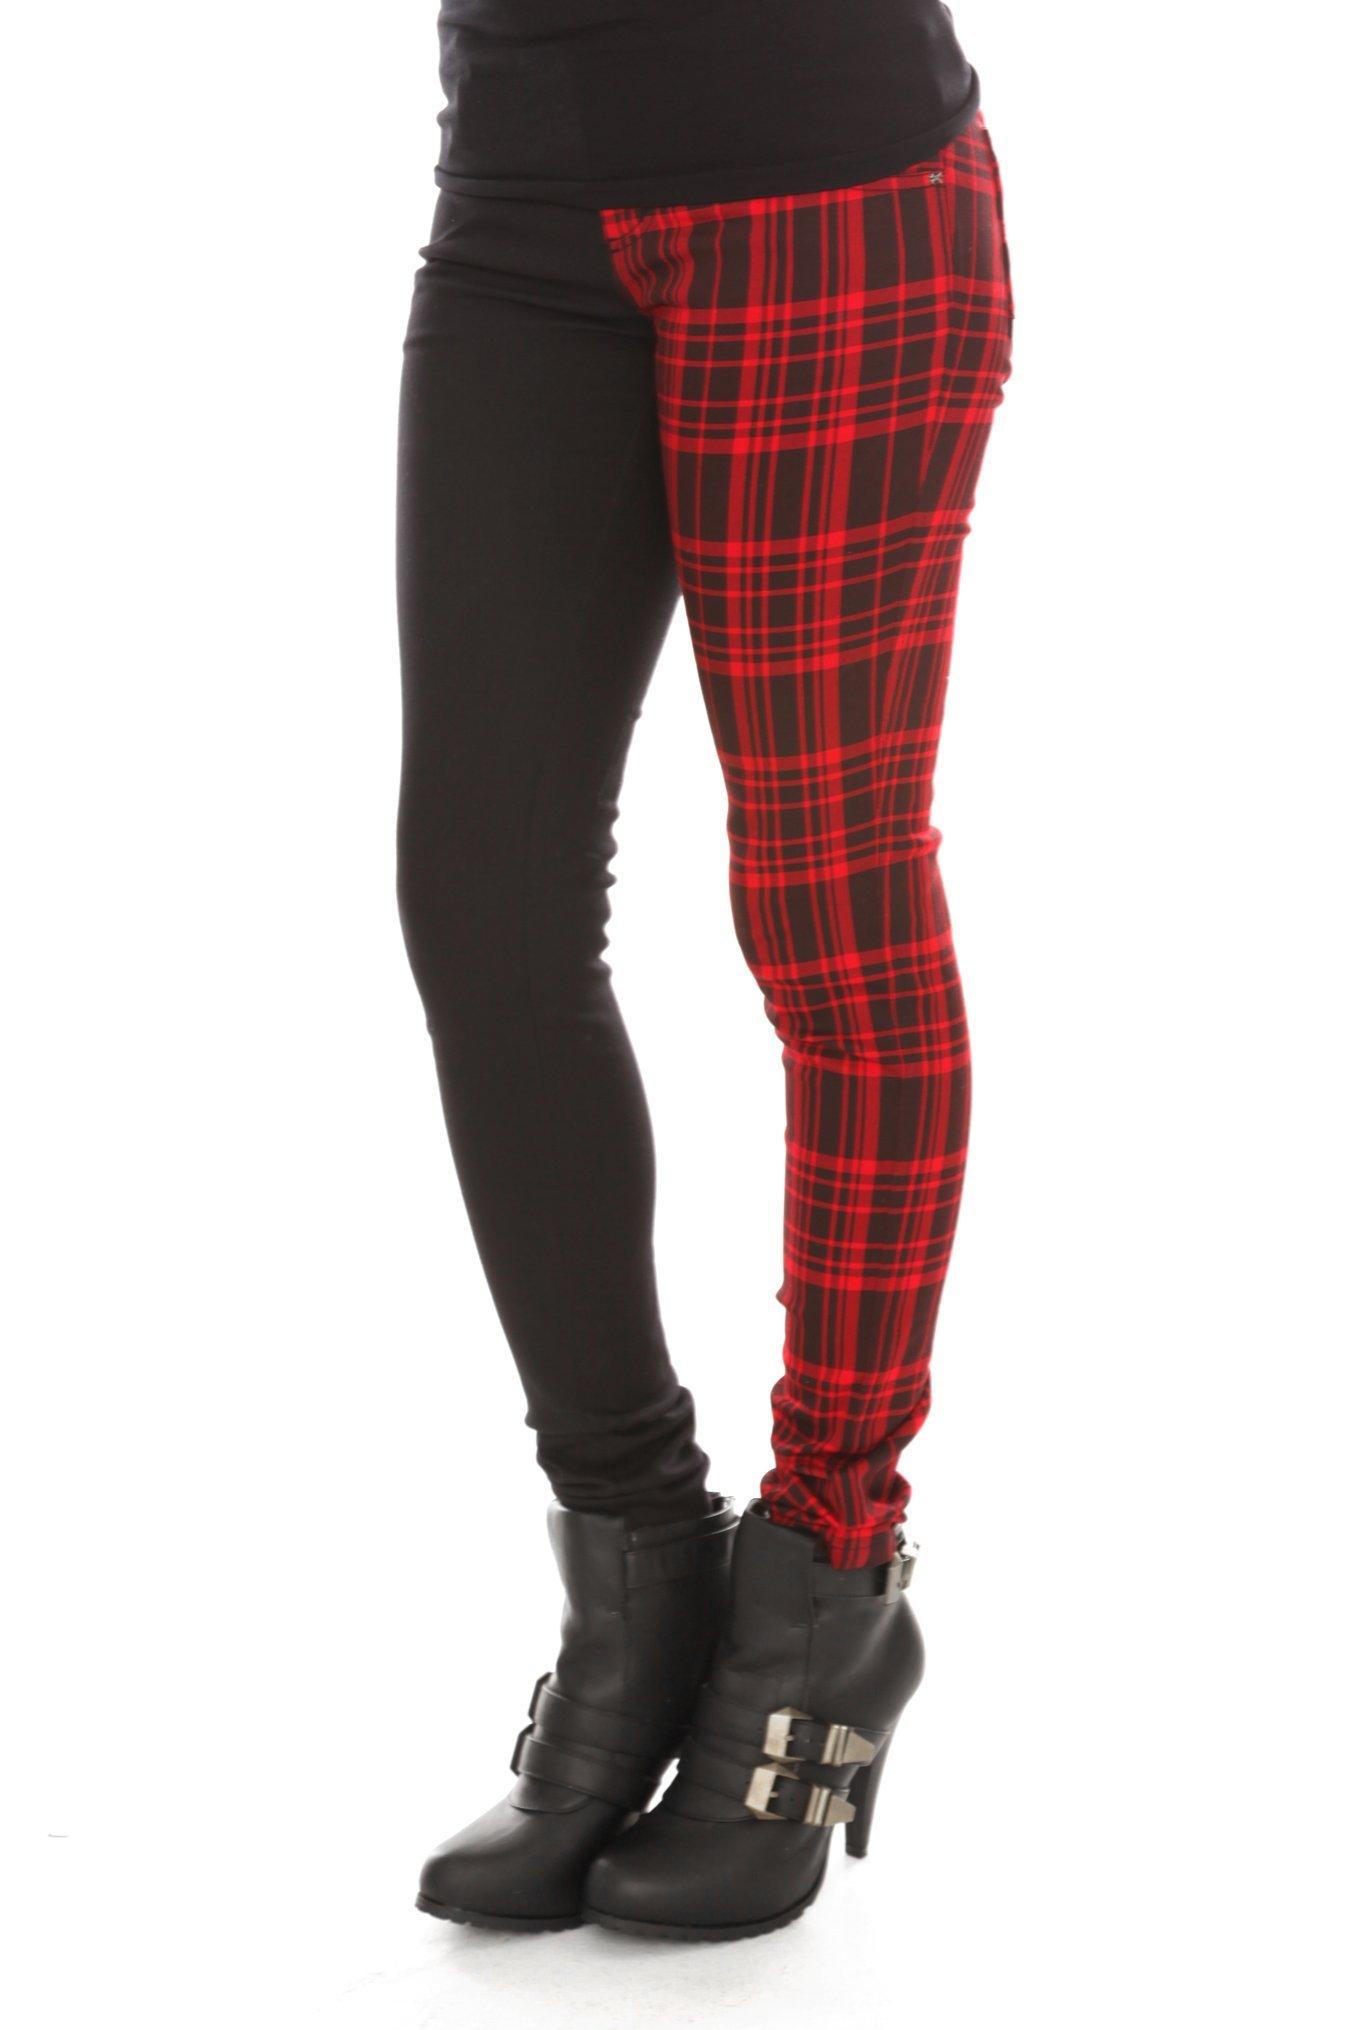 Black & Red Plaid Split Leg Pants, Hot Topic